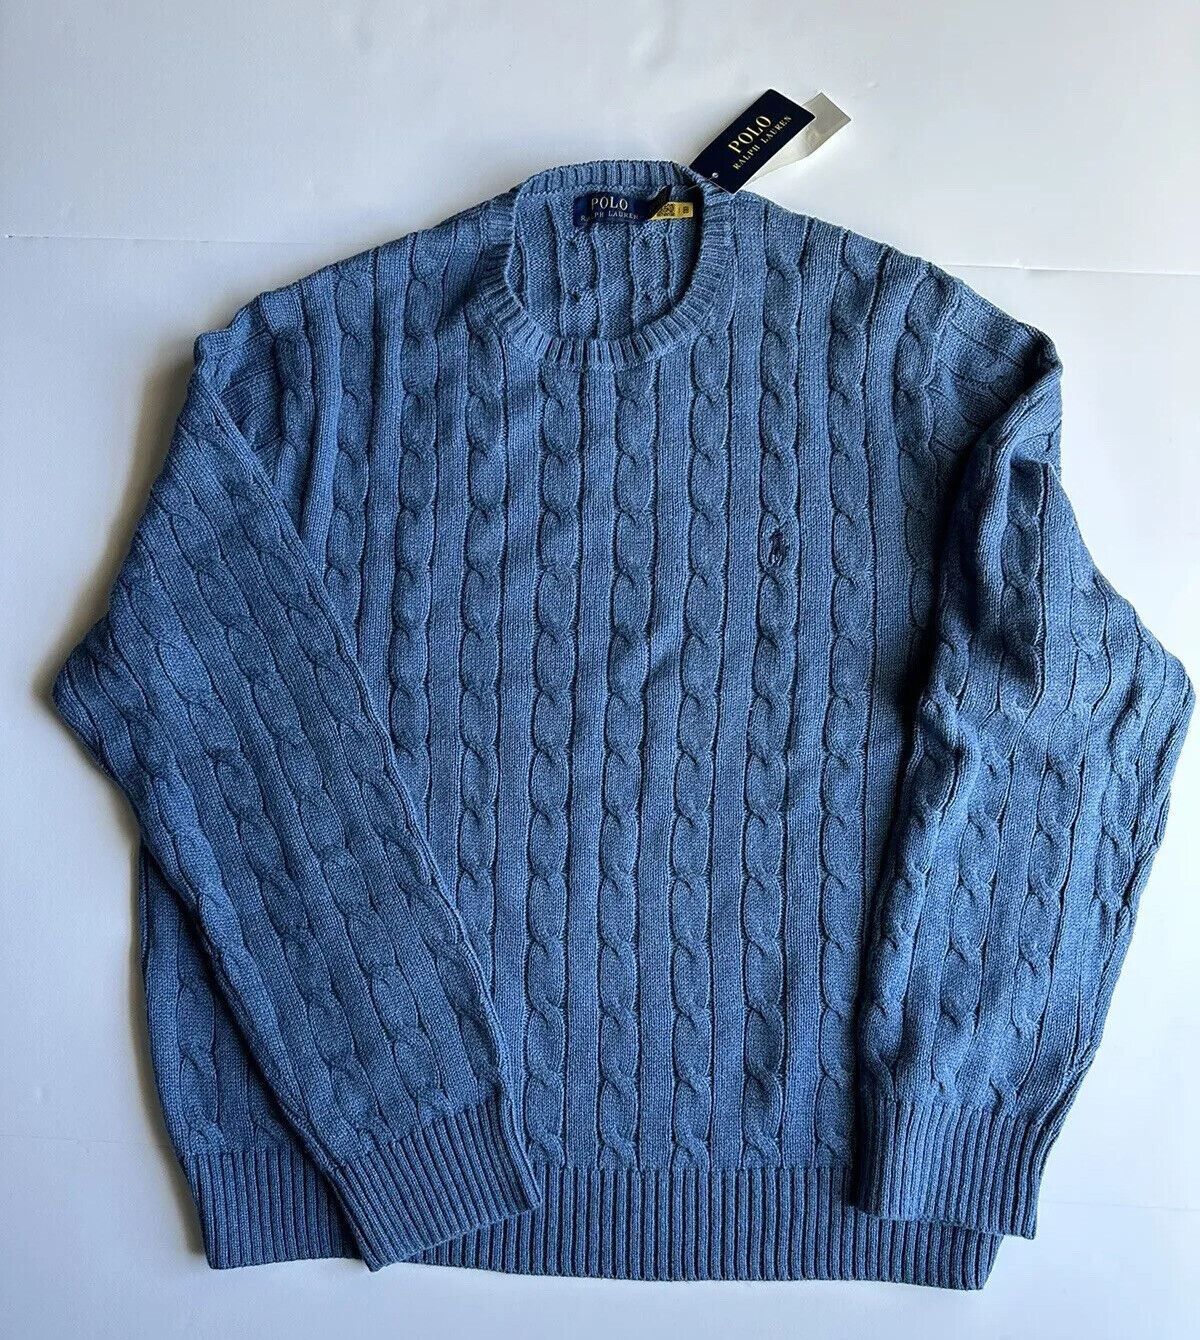 NWT $138 Polo Ralph Lauren Men's Knit Sweater Blue 2XL/2TG